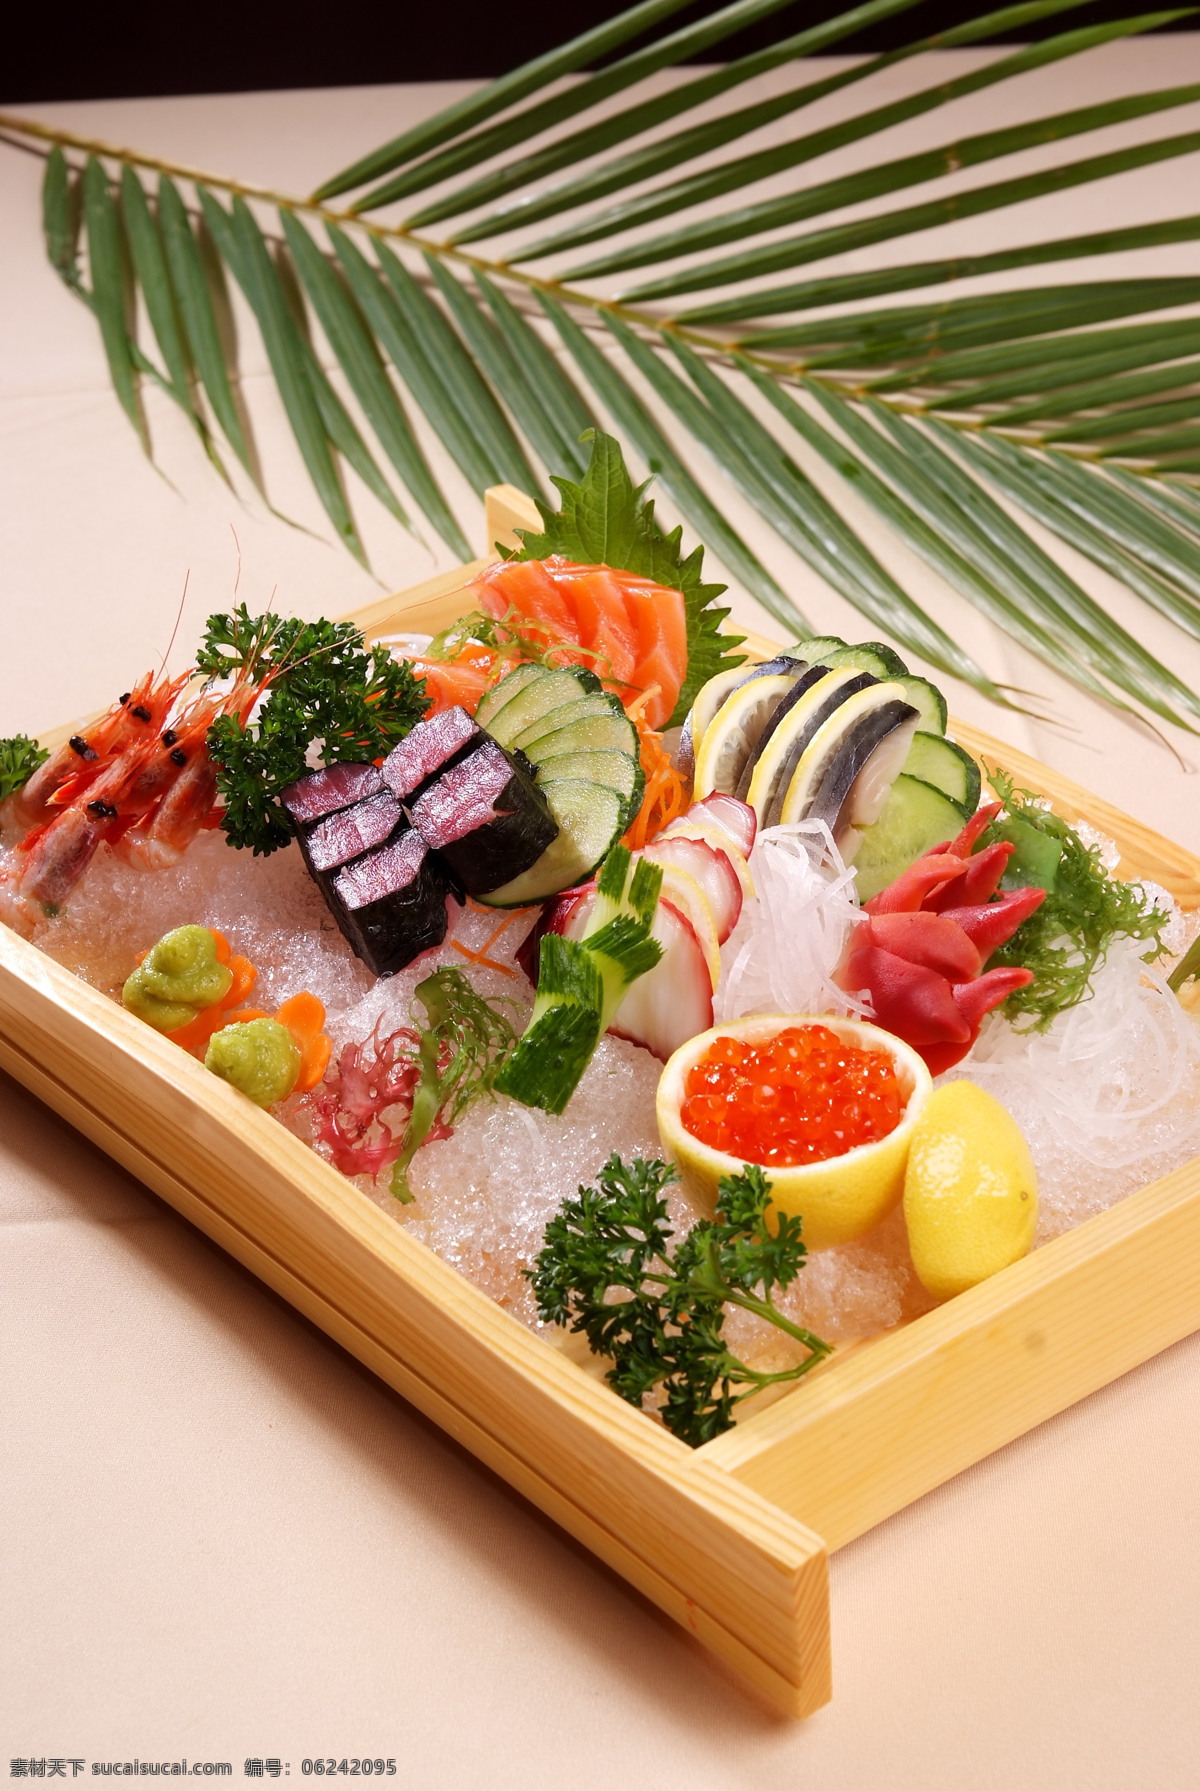 日式料理 寿司 鱼子酱 生鱼片 刺身 三文鱼 虾 日式拼盘 餐饮美食